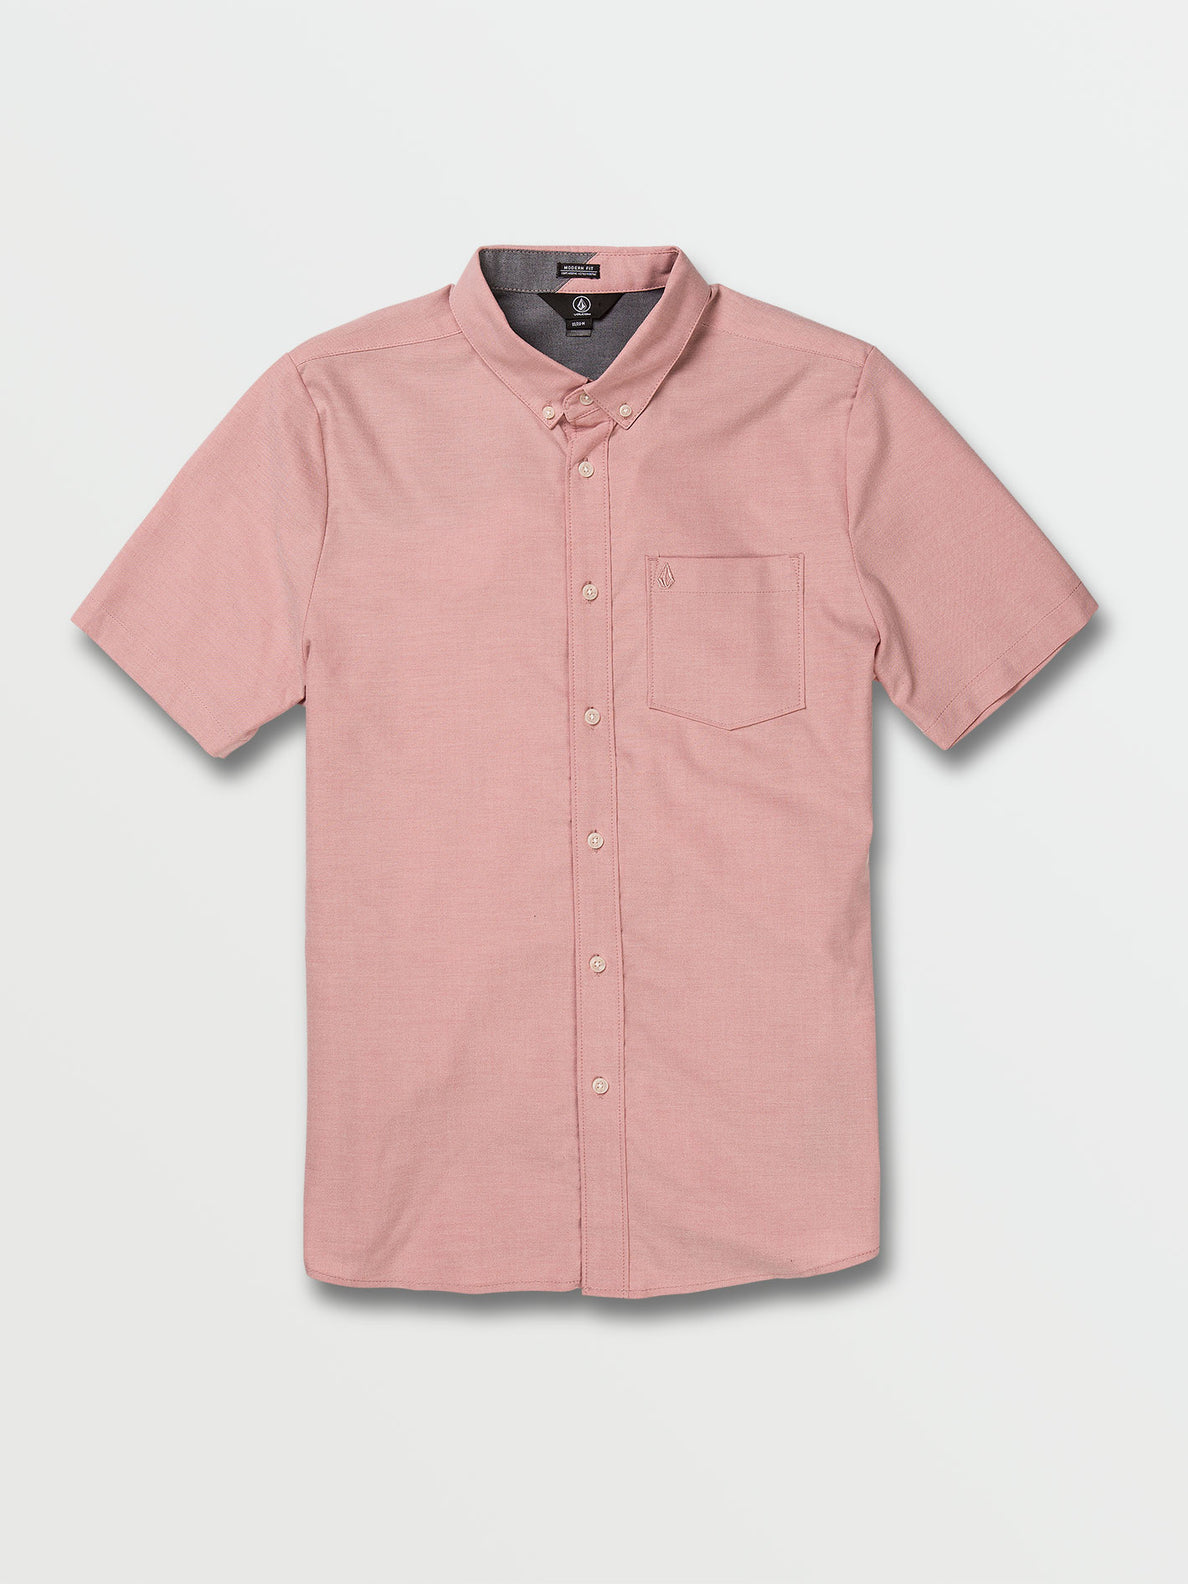 Everett Oxford Short Sleeve Shirt - Desert Sand (A0432105_DSS) [F]